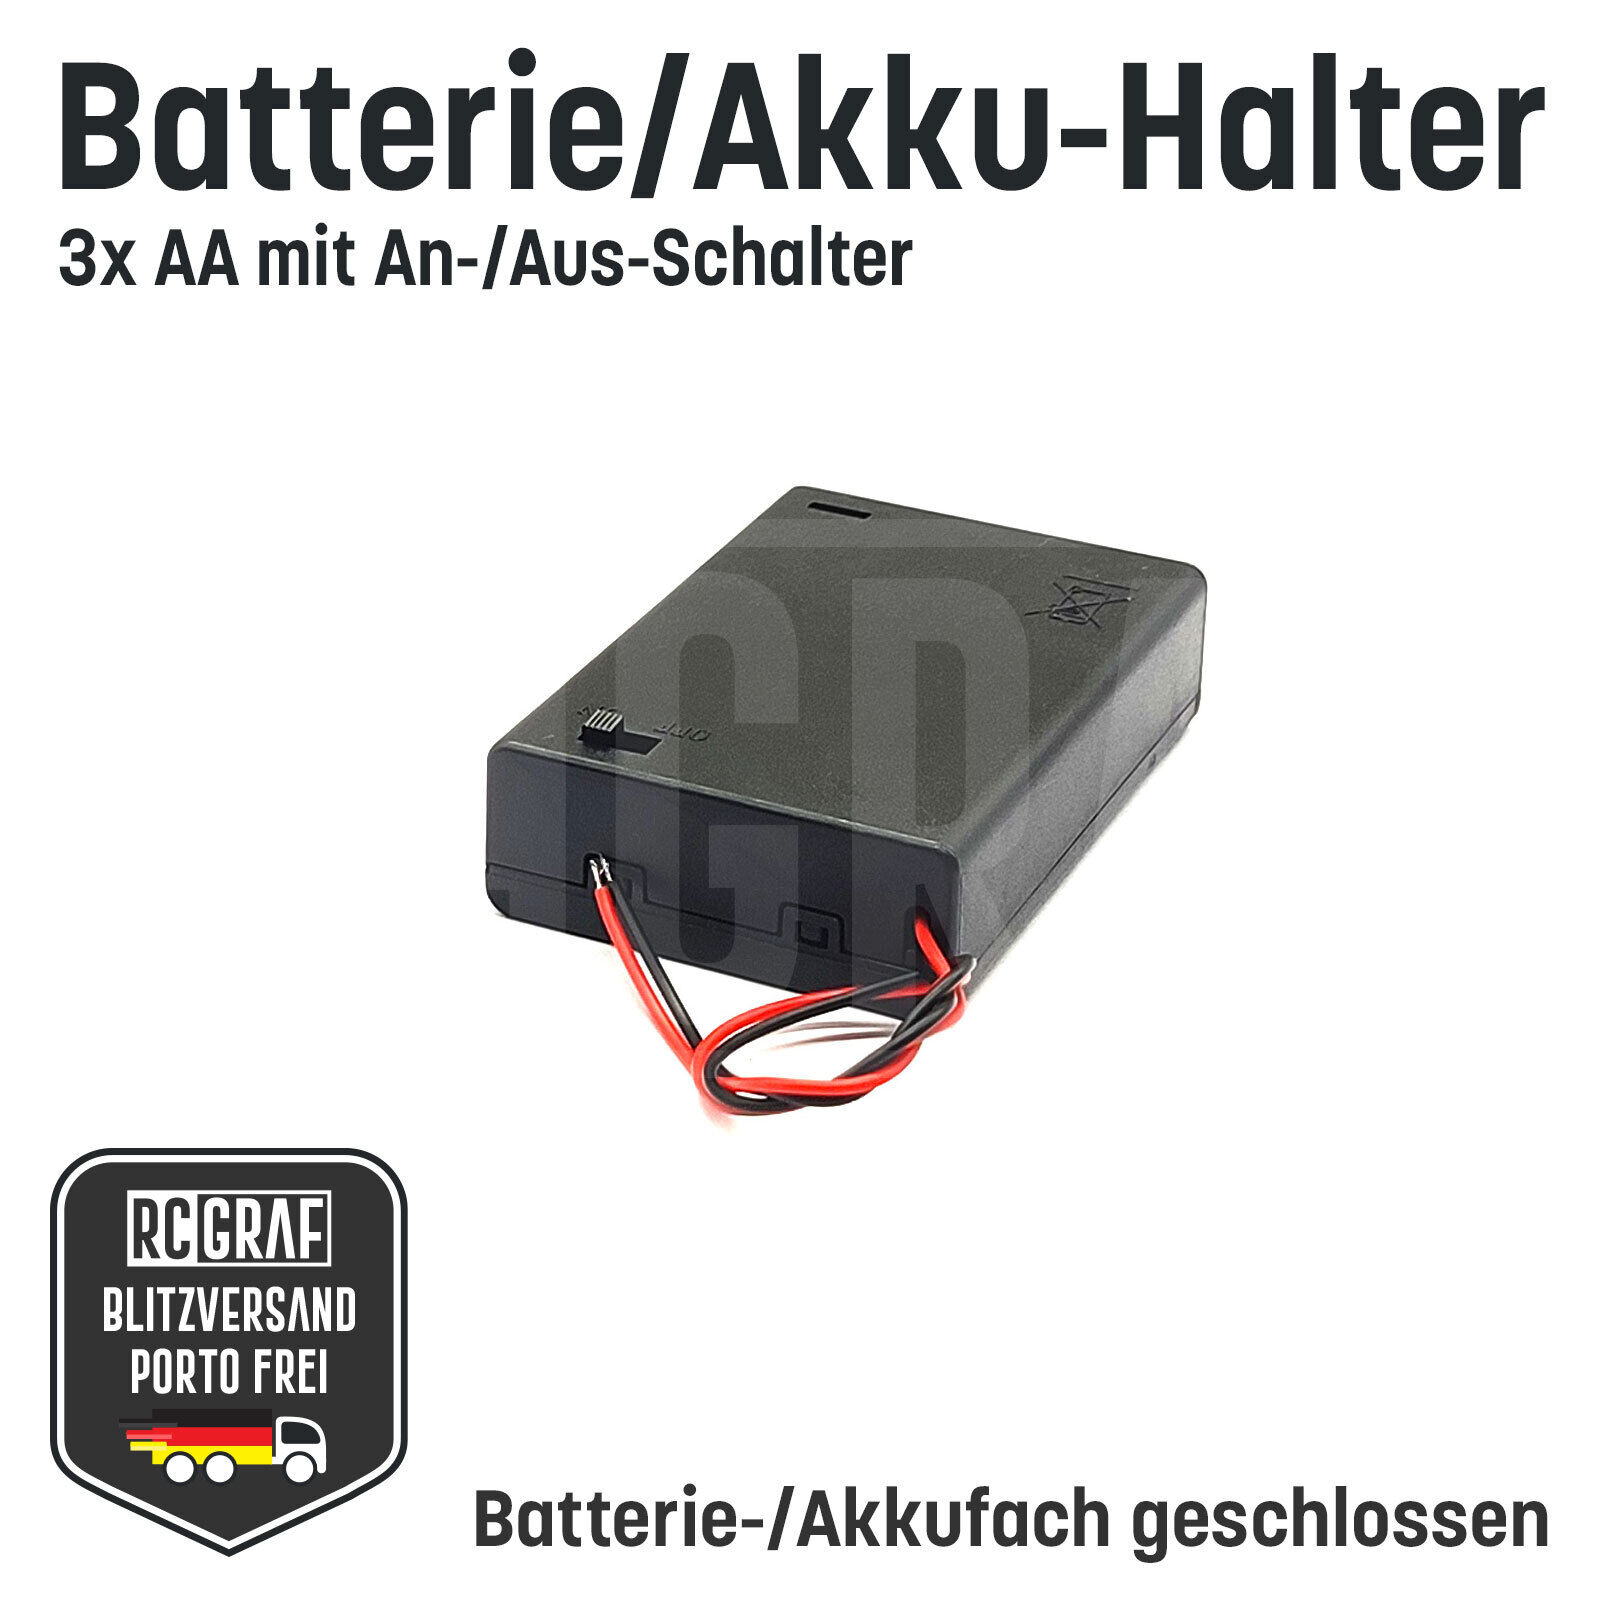 Batterie-/Akkuhalter AA AAA 9V 1-10 Schalter geschlossen, Batteriefach, Akkufach